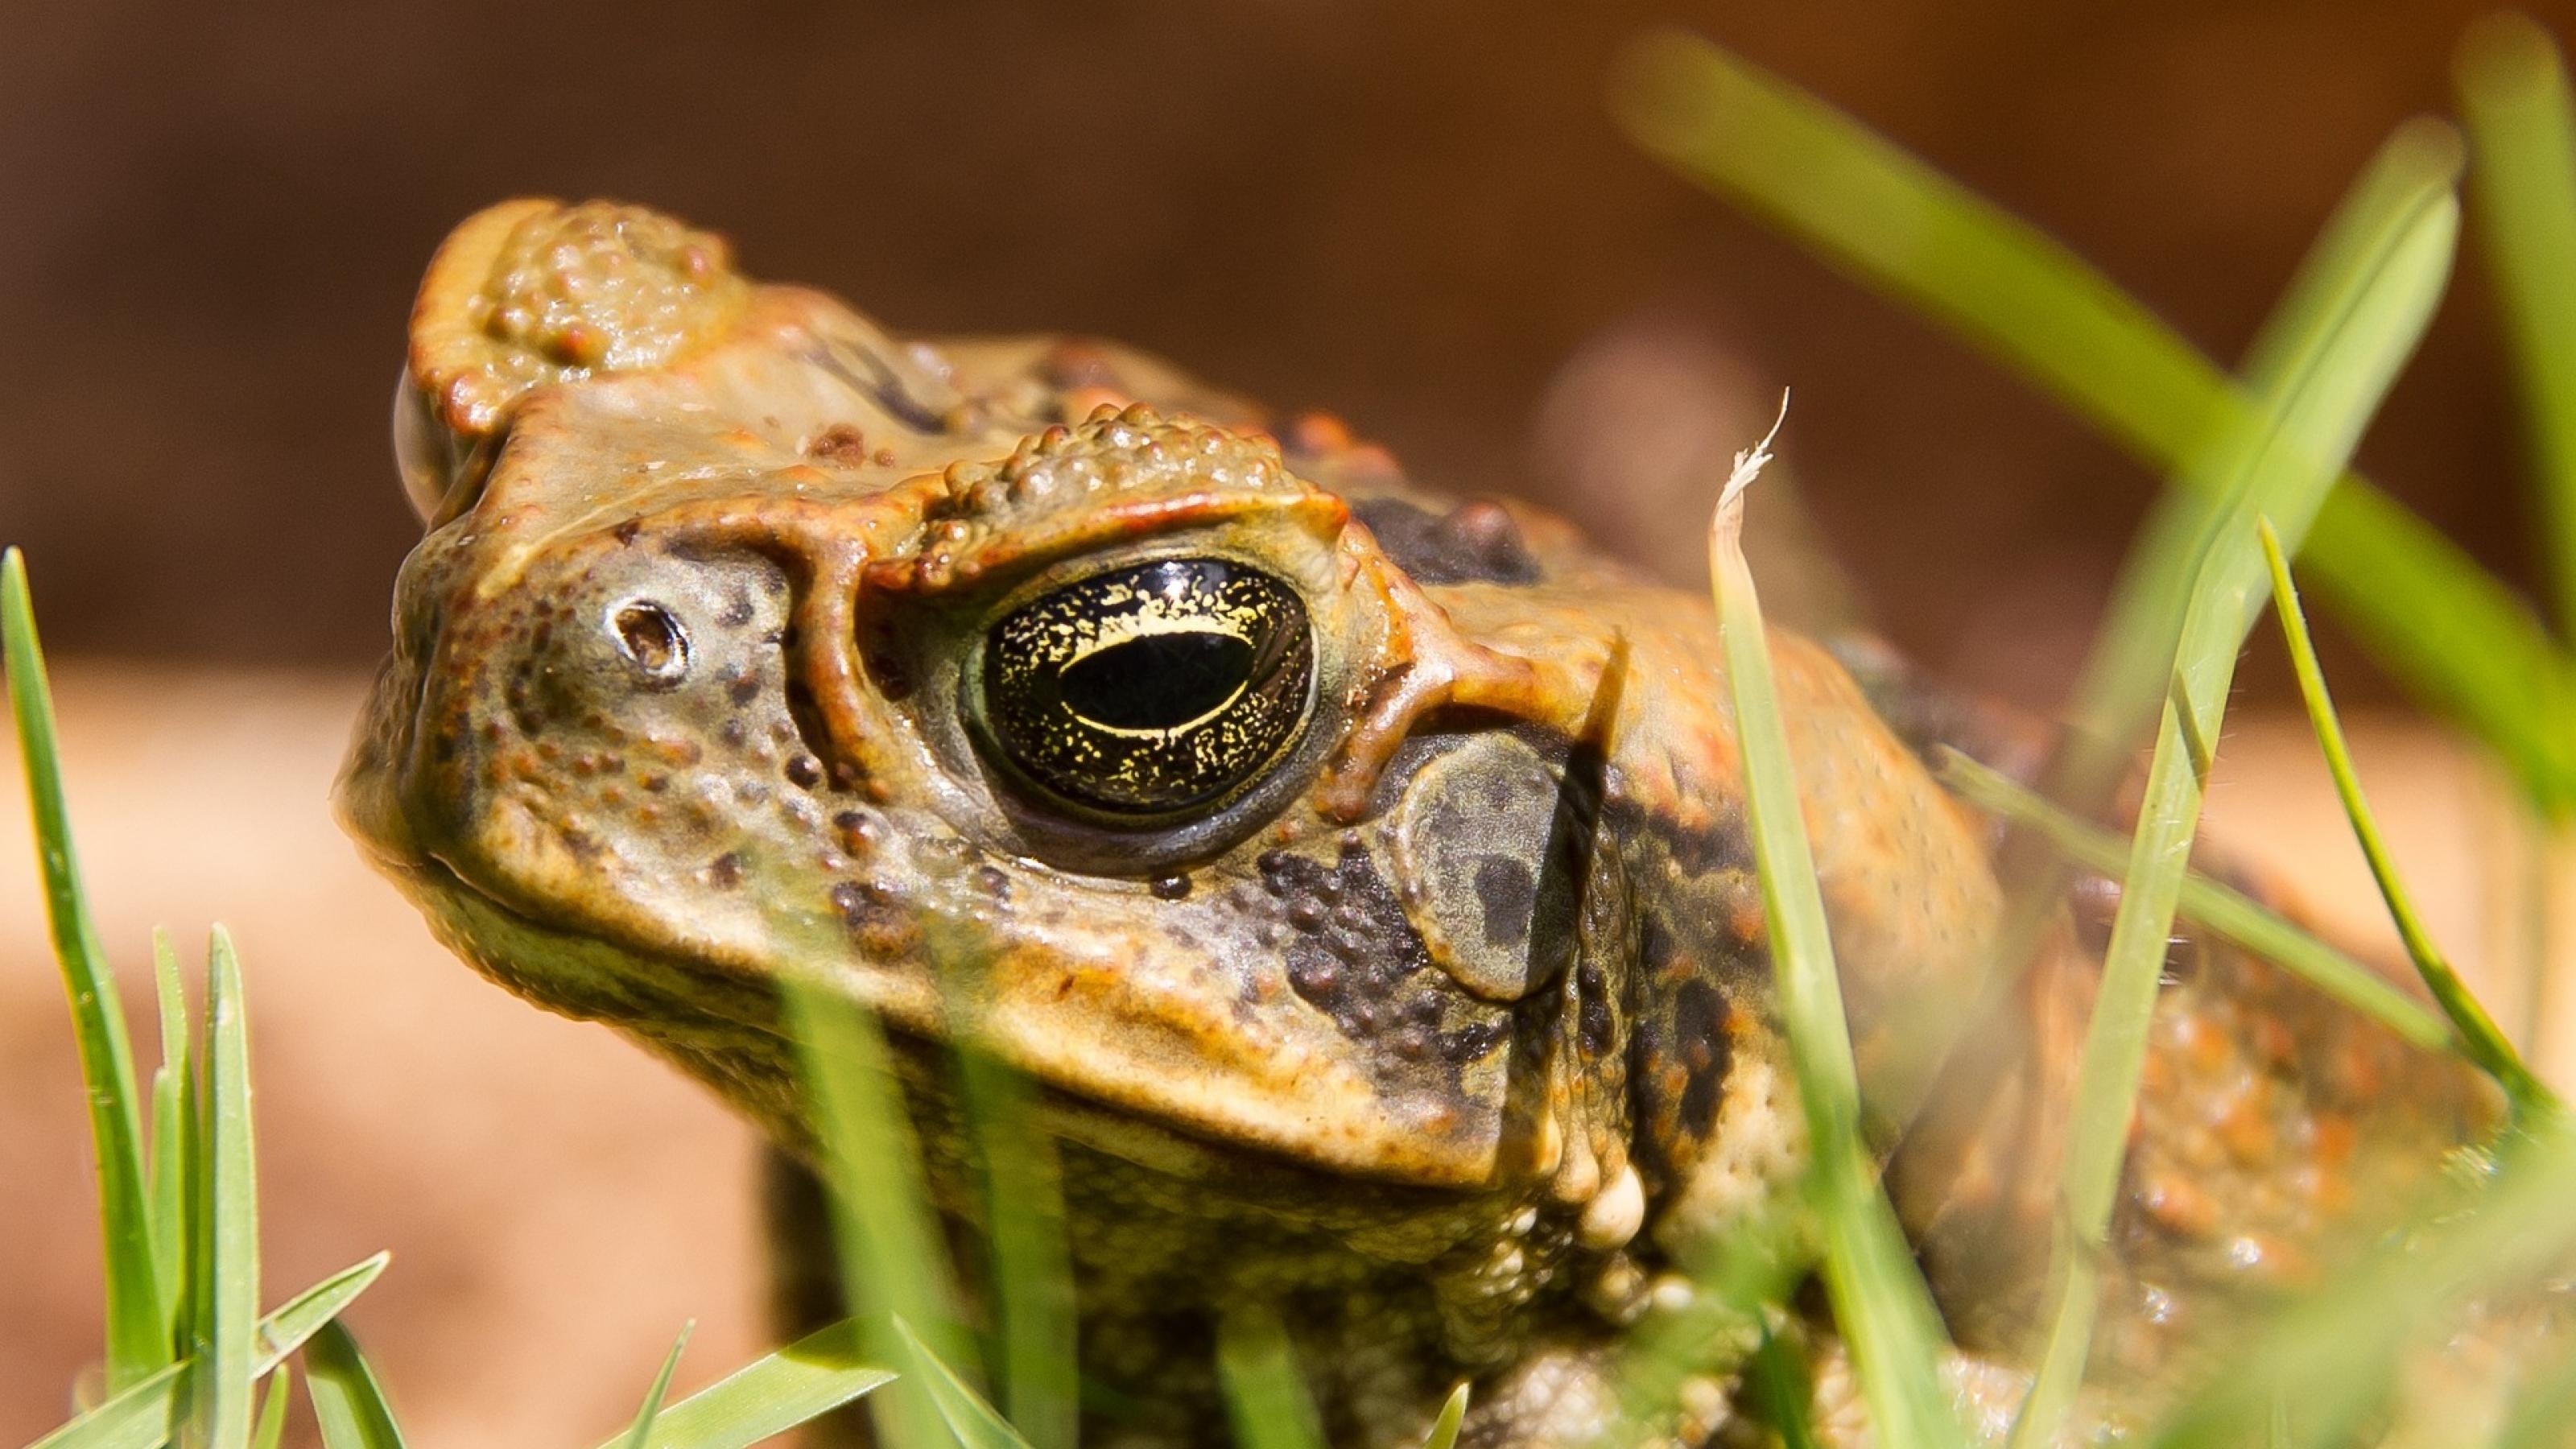 In Nahaufnahme ist das Auge und warzige Gesicht einer Aga-Kröte zu sehen.